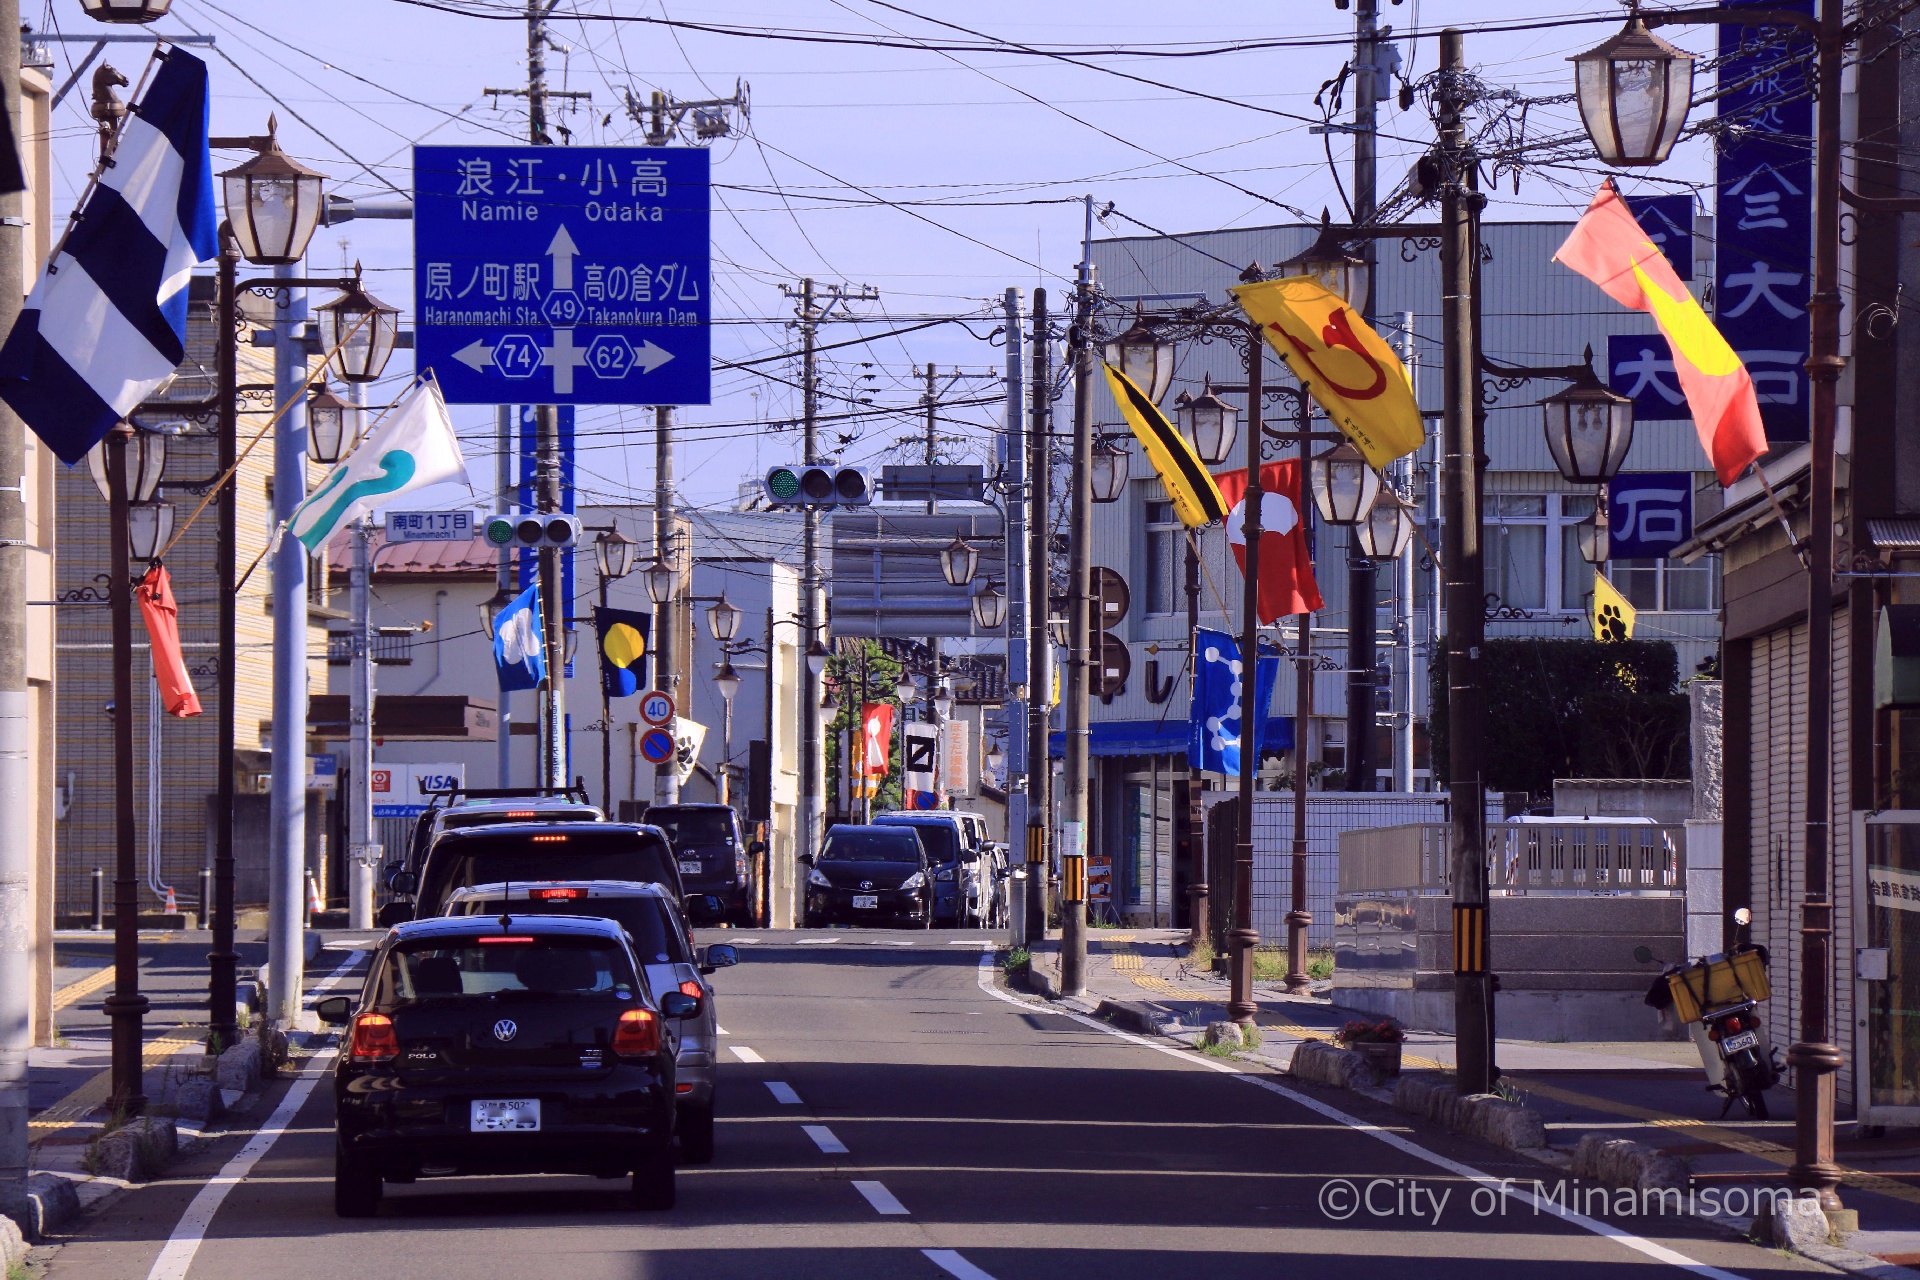 相馬野馬追直前の町の様子。車が走っている道路脇の街灯に、旗指物が飾られている。